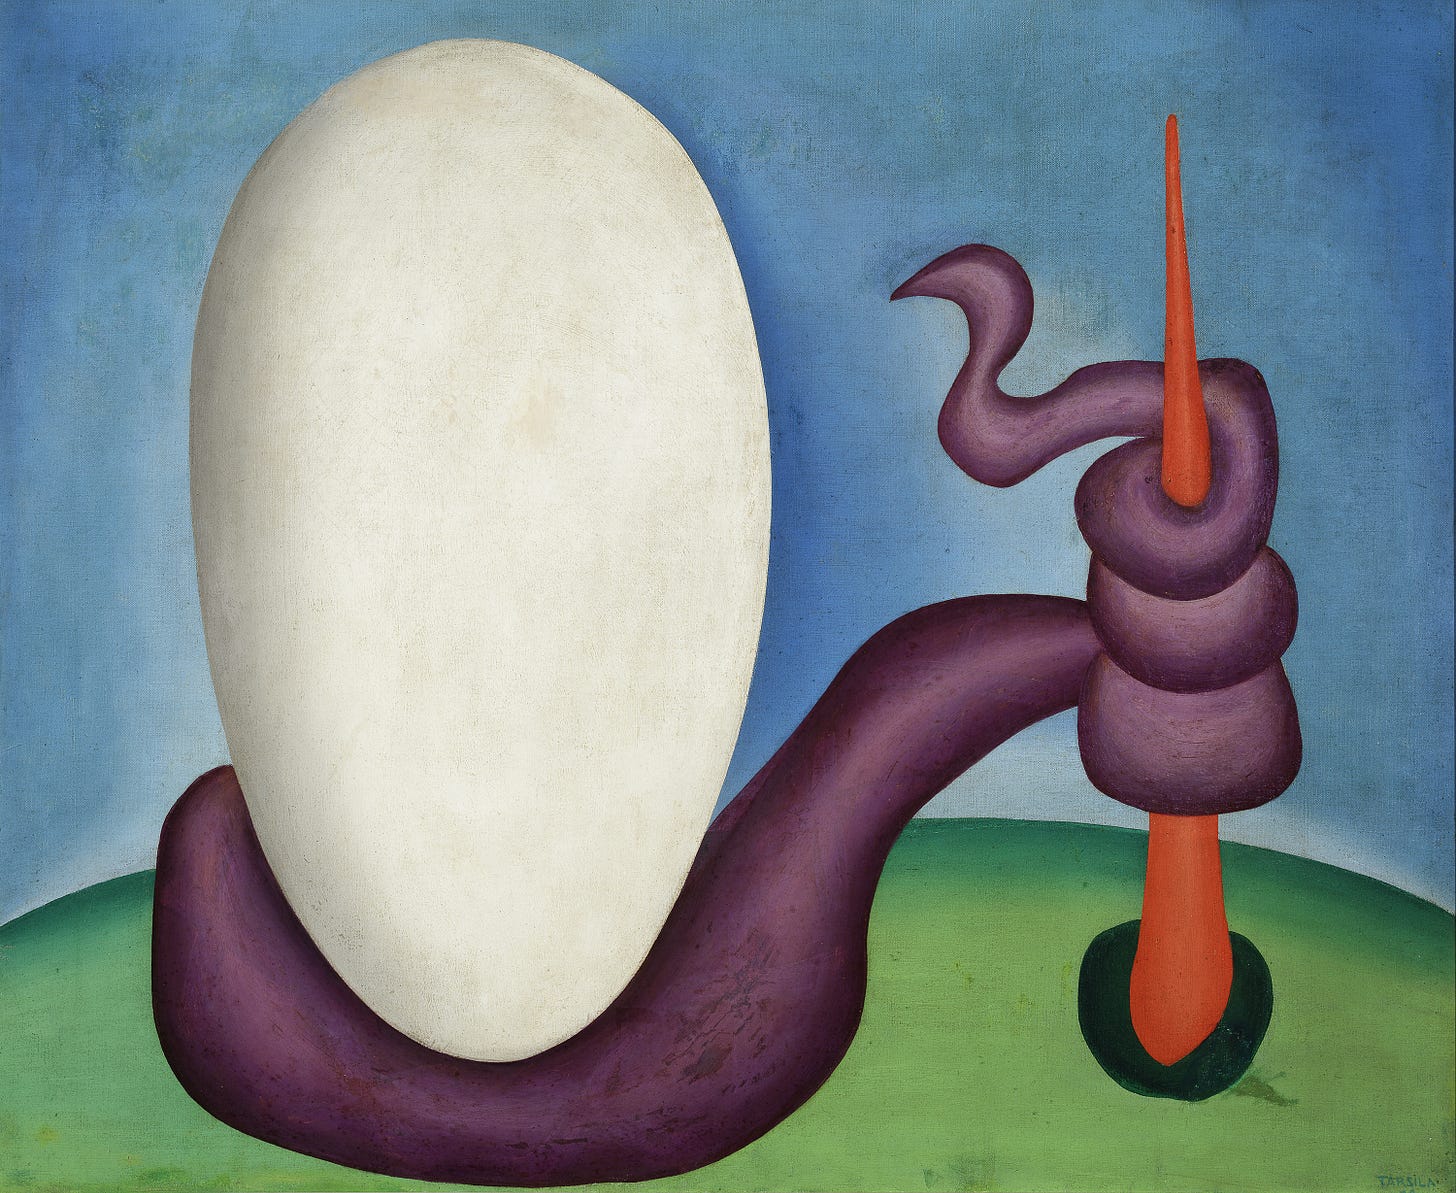 pintura que mostra um fundo azul com um chão verde cortando o horizonte como o topo de uma colina e um ovo enorme em cima, com a base enrolada por uma cobra cuja outra ponta do corpo enlaça um bastão vermelho